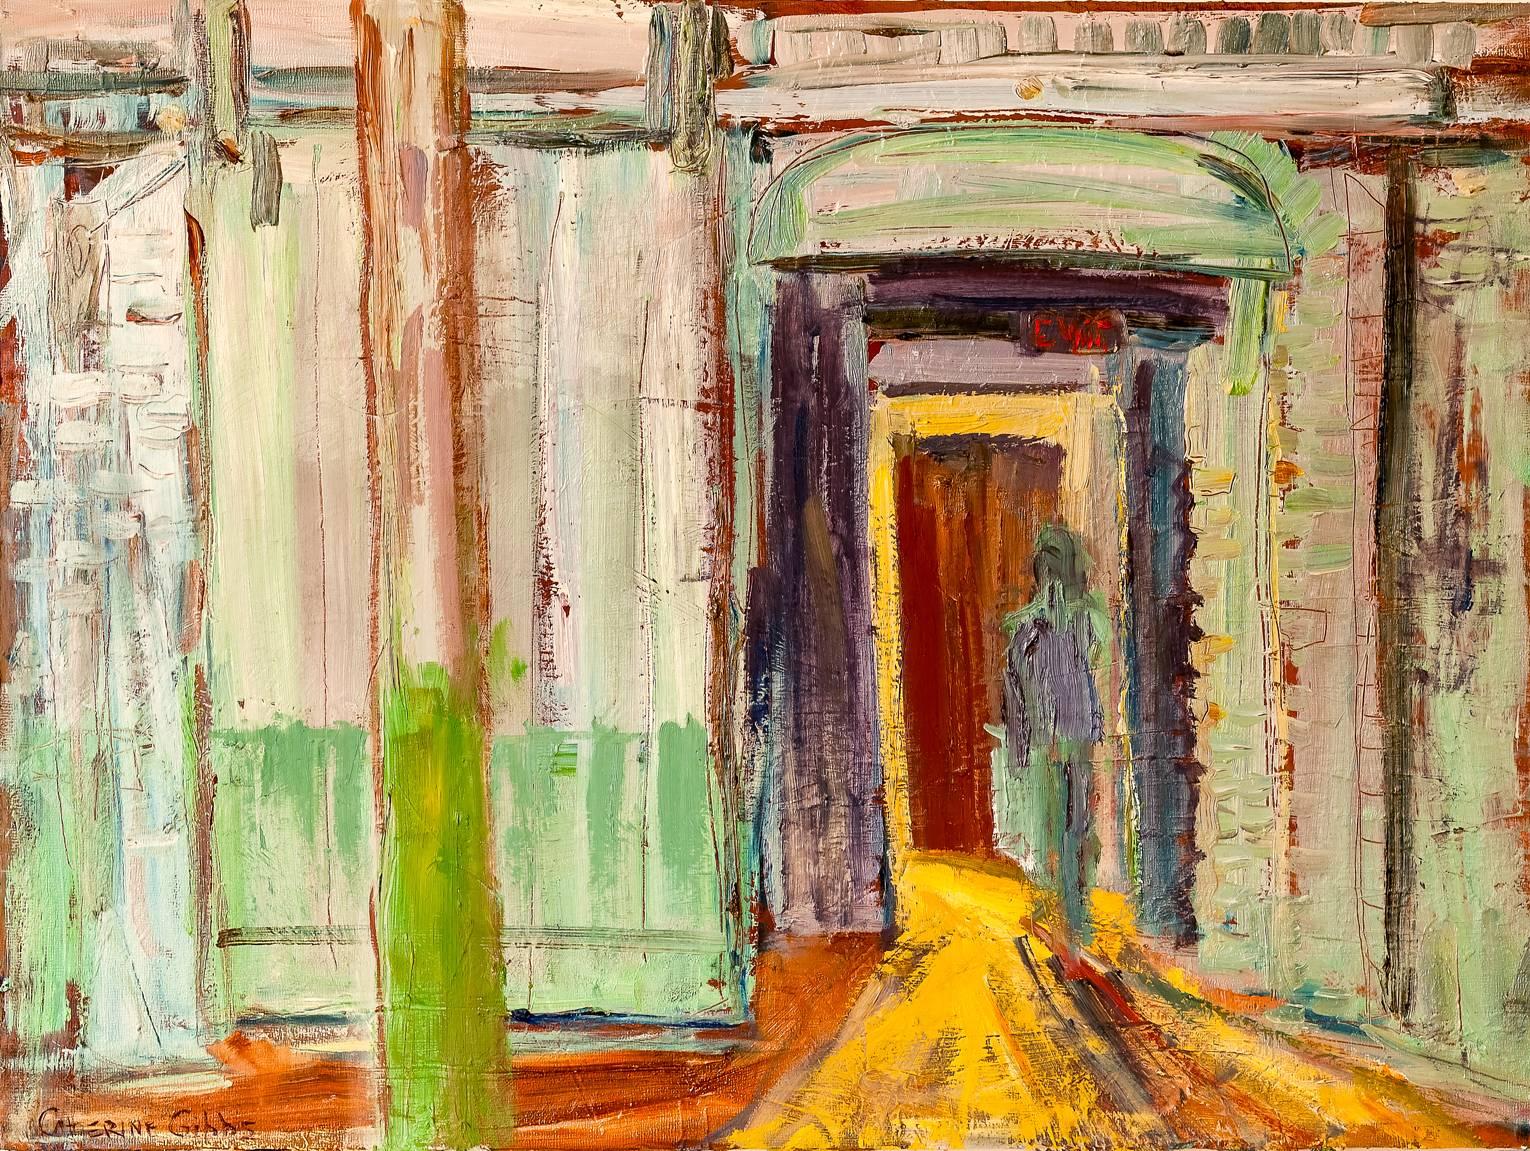 Interior Painting de Catherine Picard-Gibbs - "Tarde en el Estudio", interior, fábrica, verde azulado, azul, amarillo, óleo